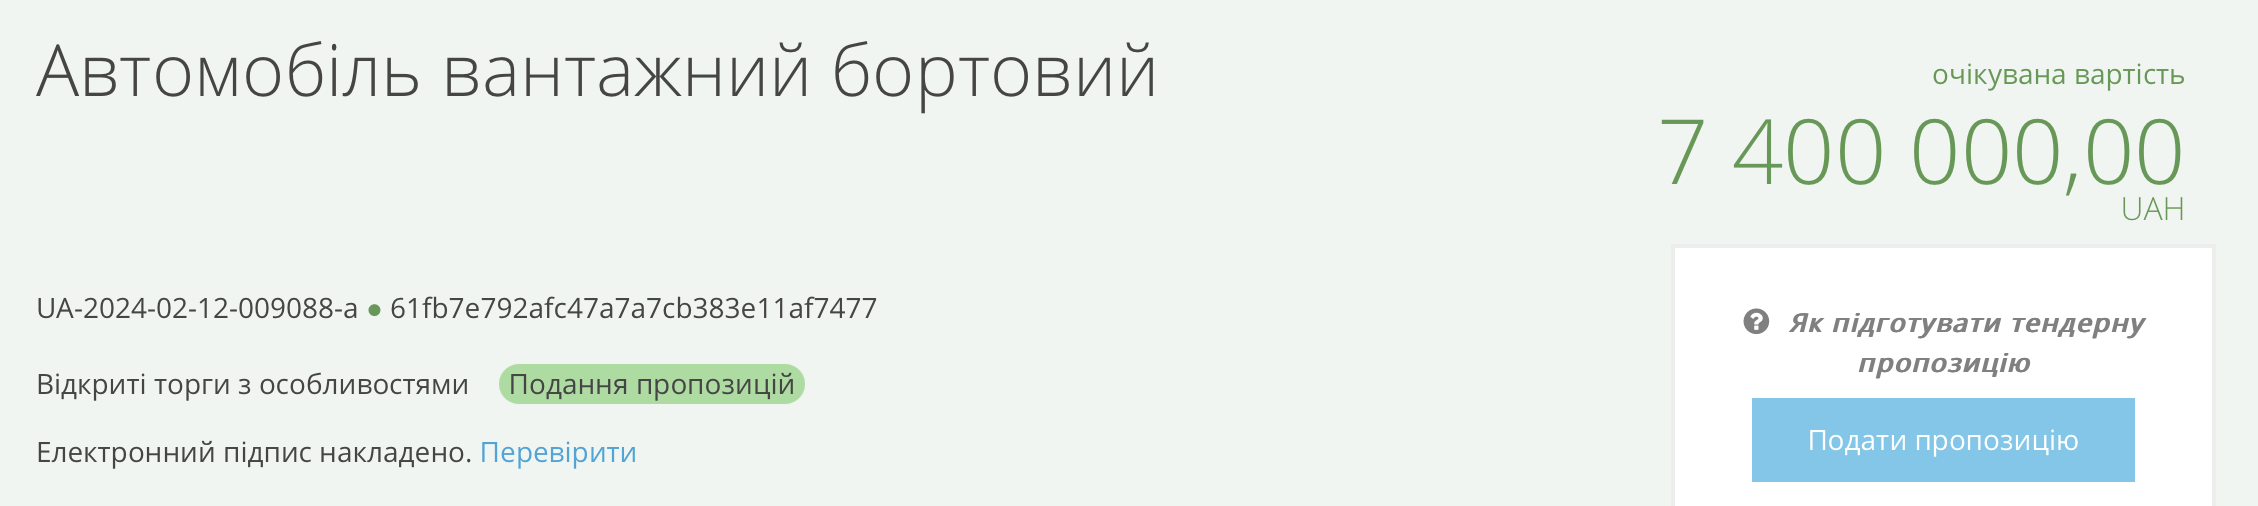 Тендер КП «Миколаївські парки» на покупку вантажних автомобілів. Скриншот з ProZorro